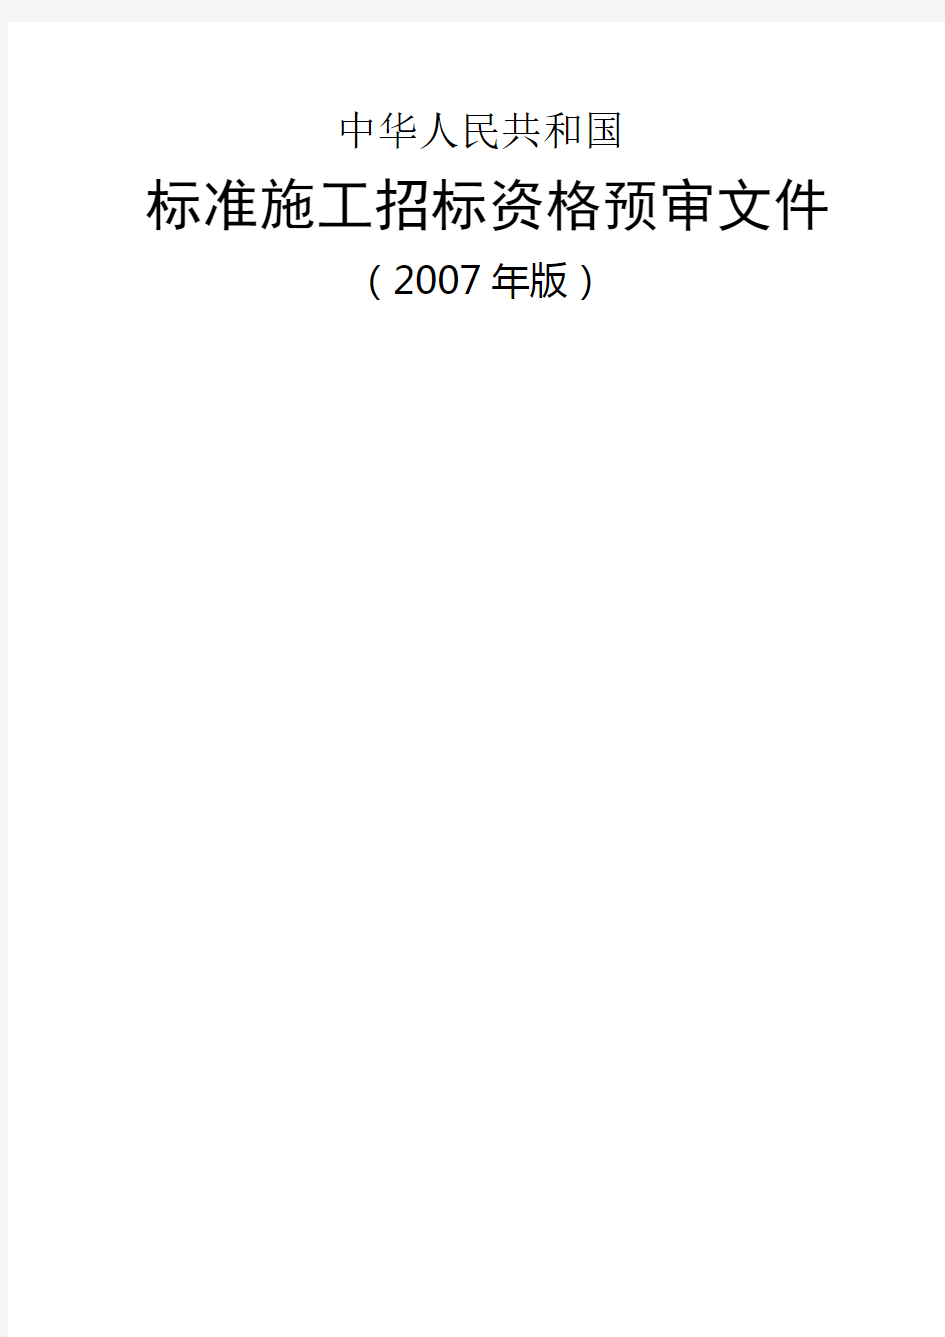 中华人民共和国标准施工招标资格预审文件(2007年版)()